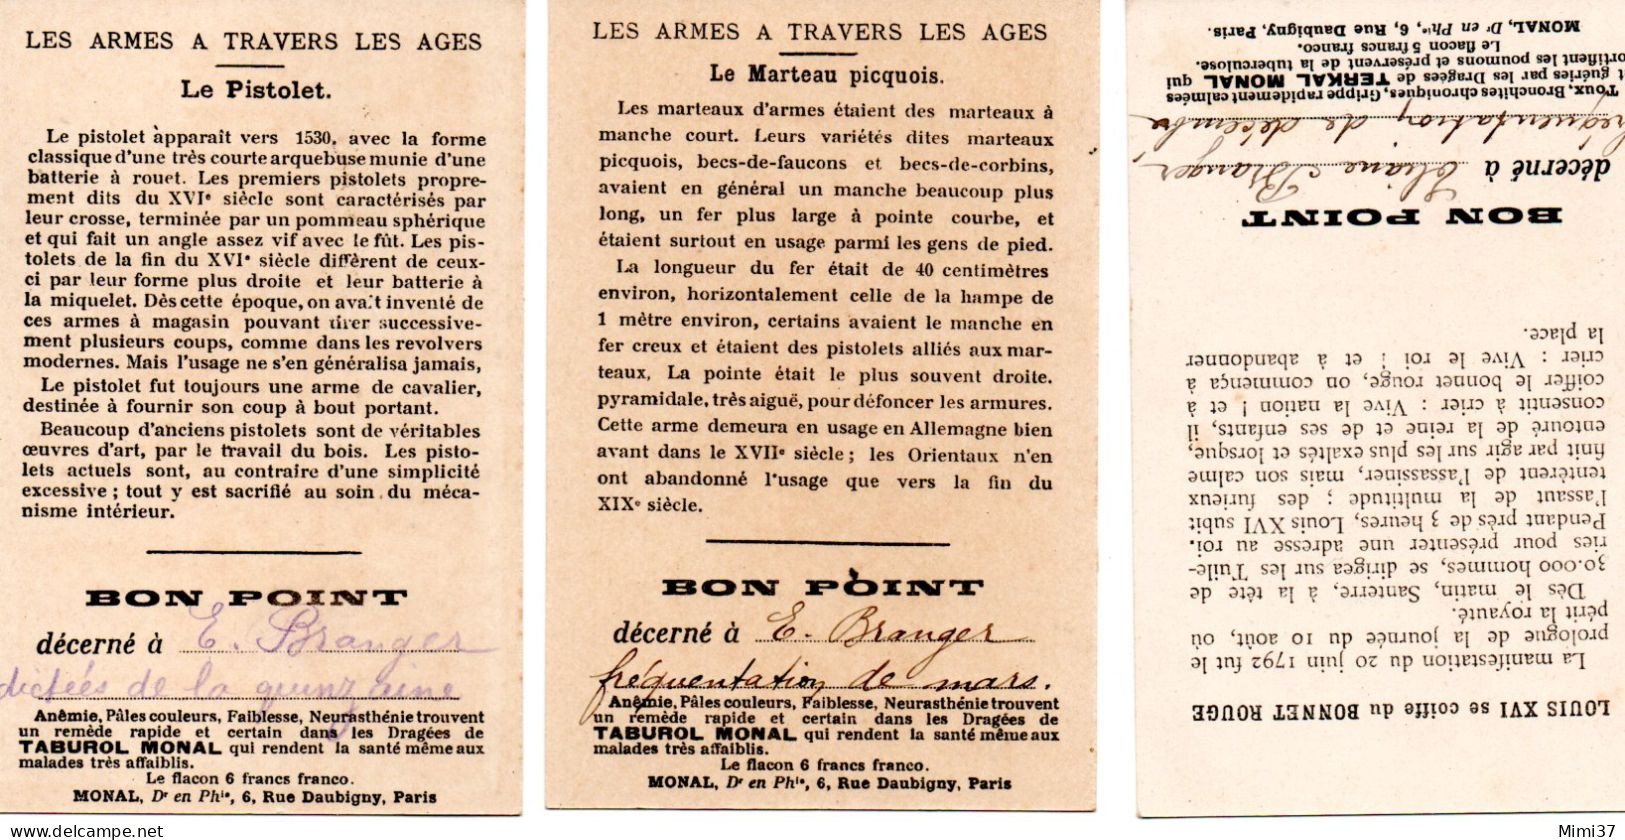 LOT DE TROIS BONS POINTS ANNEES 1920-30 PUBLICITE PHARMACIE MONAL - Diplomas Y Calificaciones Escolares